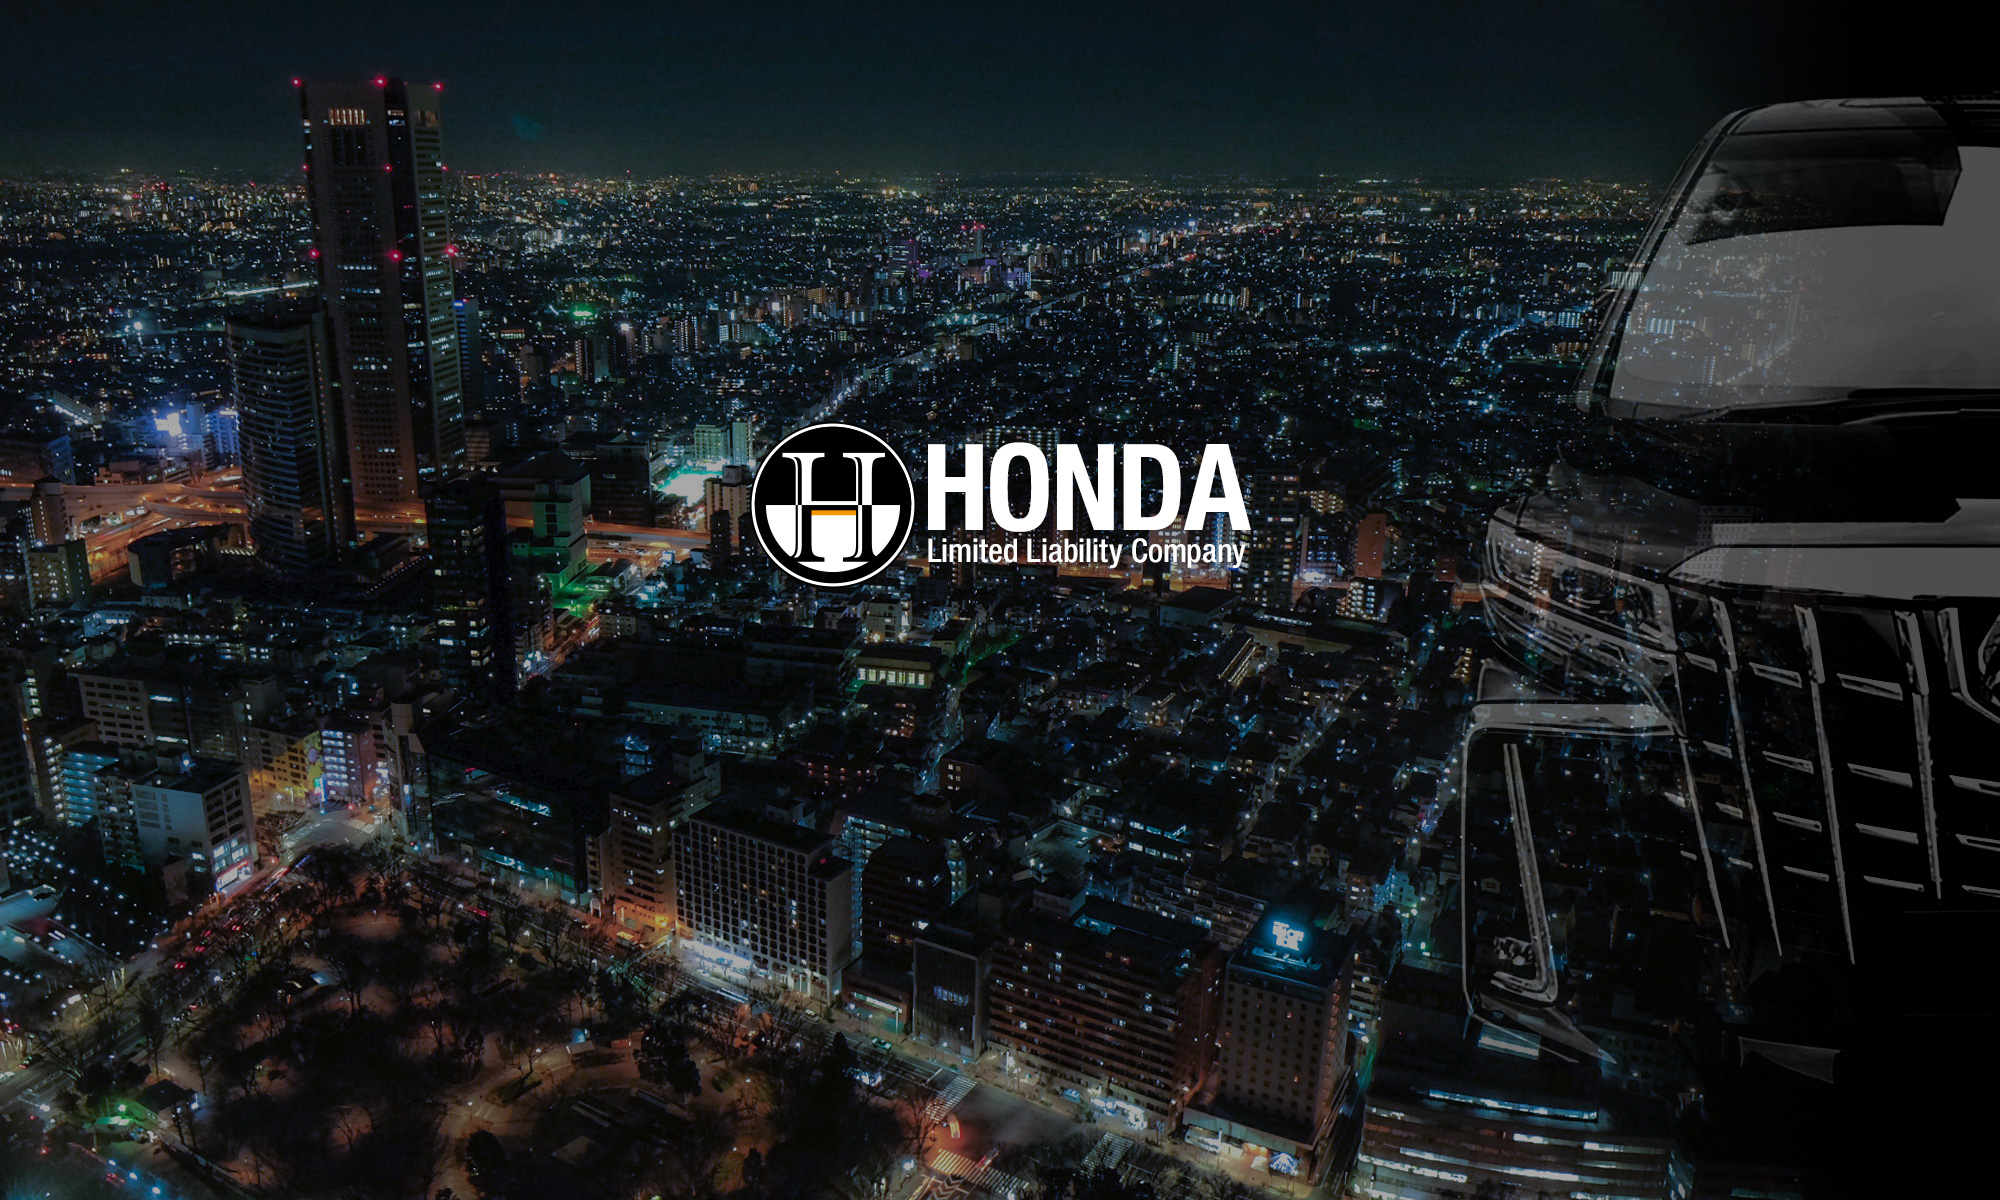 HONDA LLC